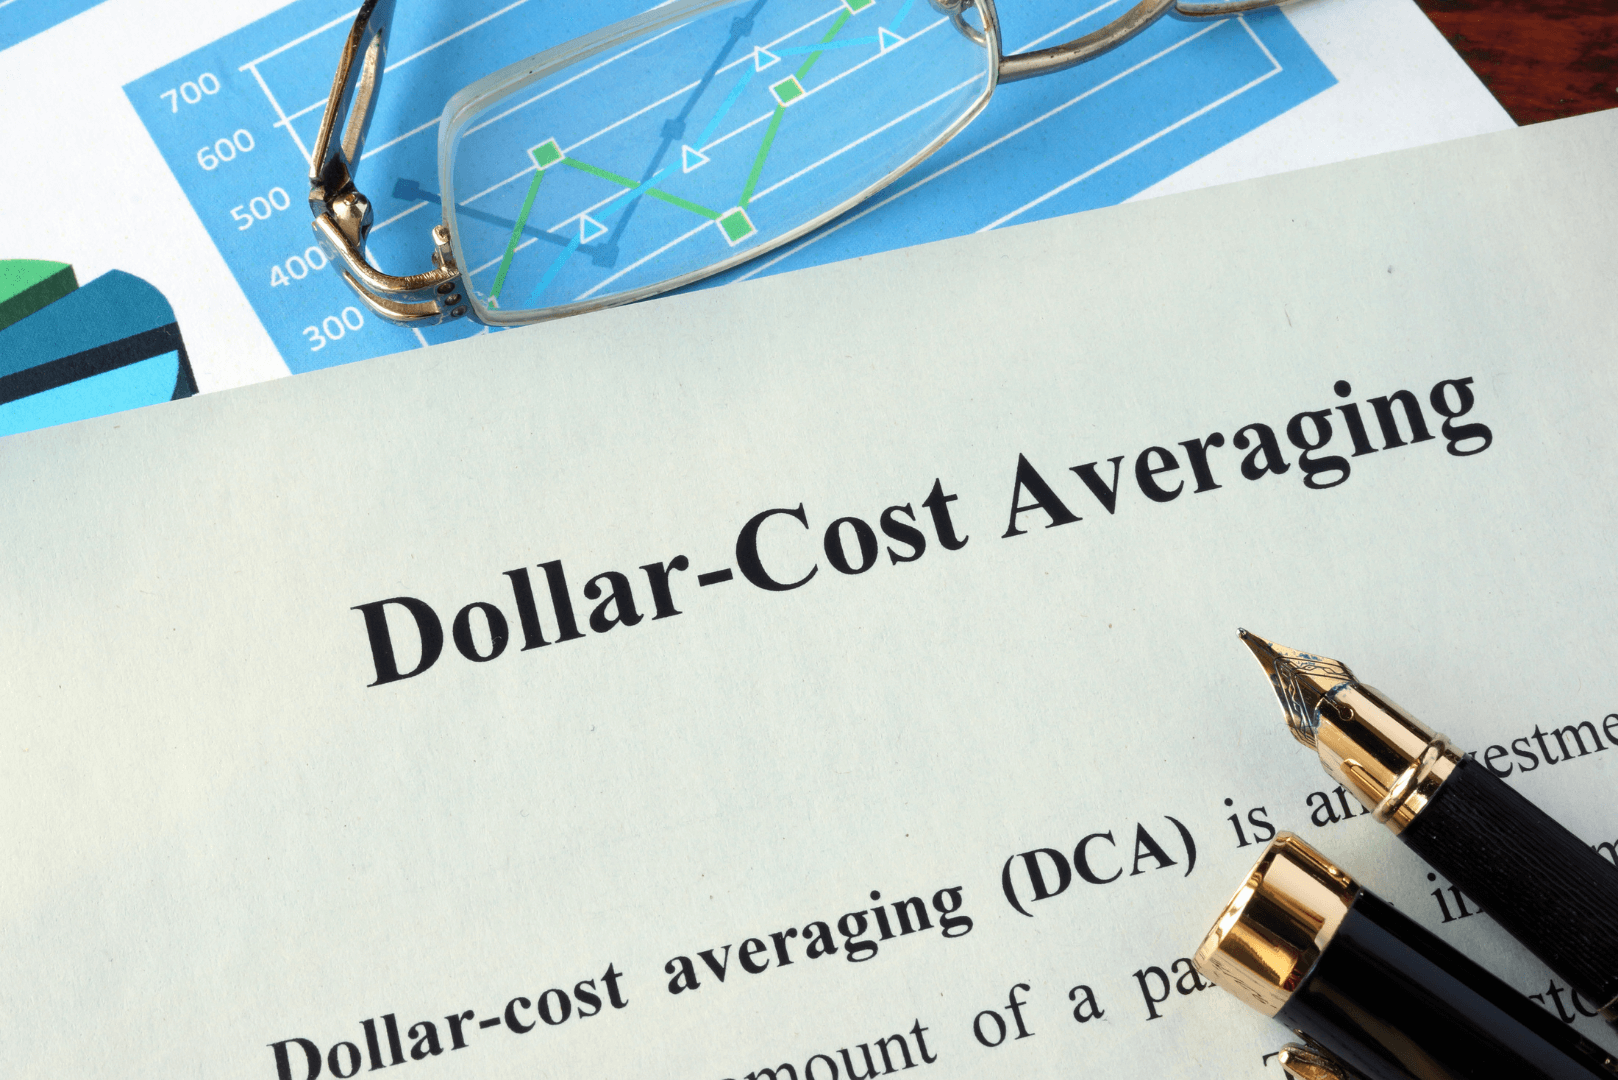 Co je Dollar-Cost Averaging (DCA)? Jak funguje Dollar-Cost Averaging (DCA)? Jaké jsou výhody a nevýhody DCA? Strategie DCA v roce 2022